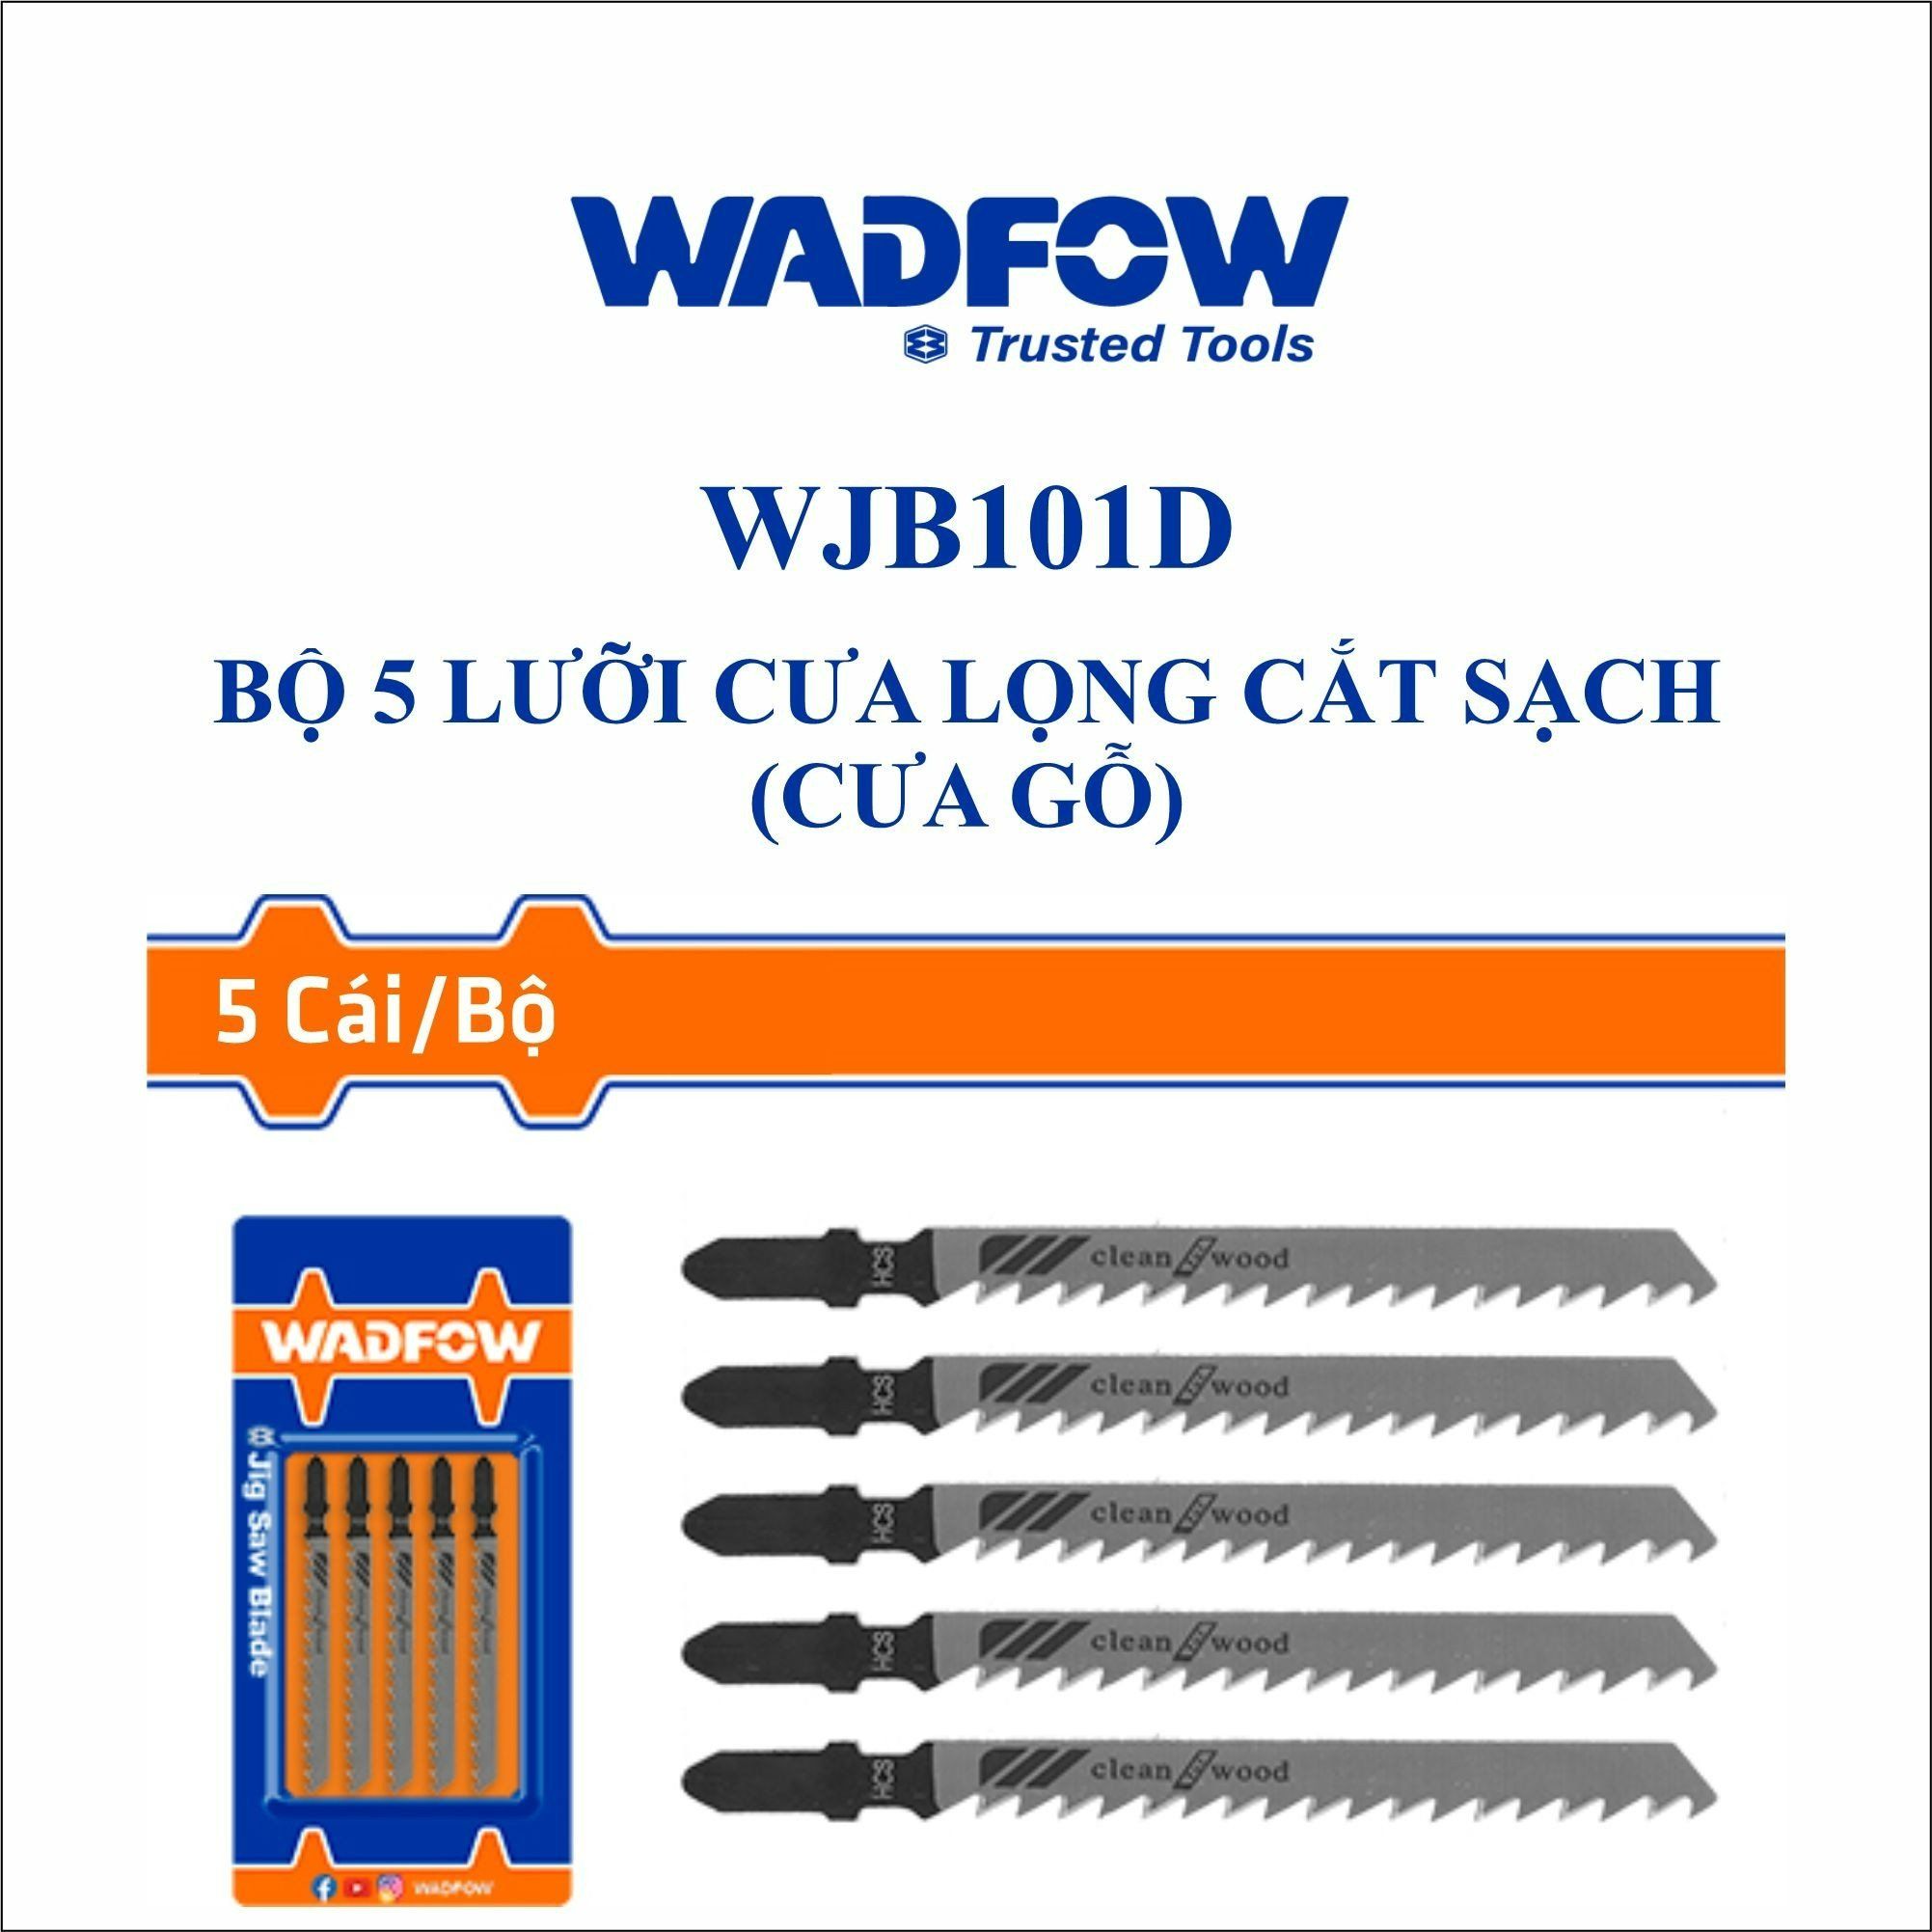  Bộ 5 lưỡi cưa lọng cắt sạch (cưa gỗ) WADFOW WJB101D 